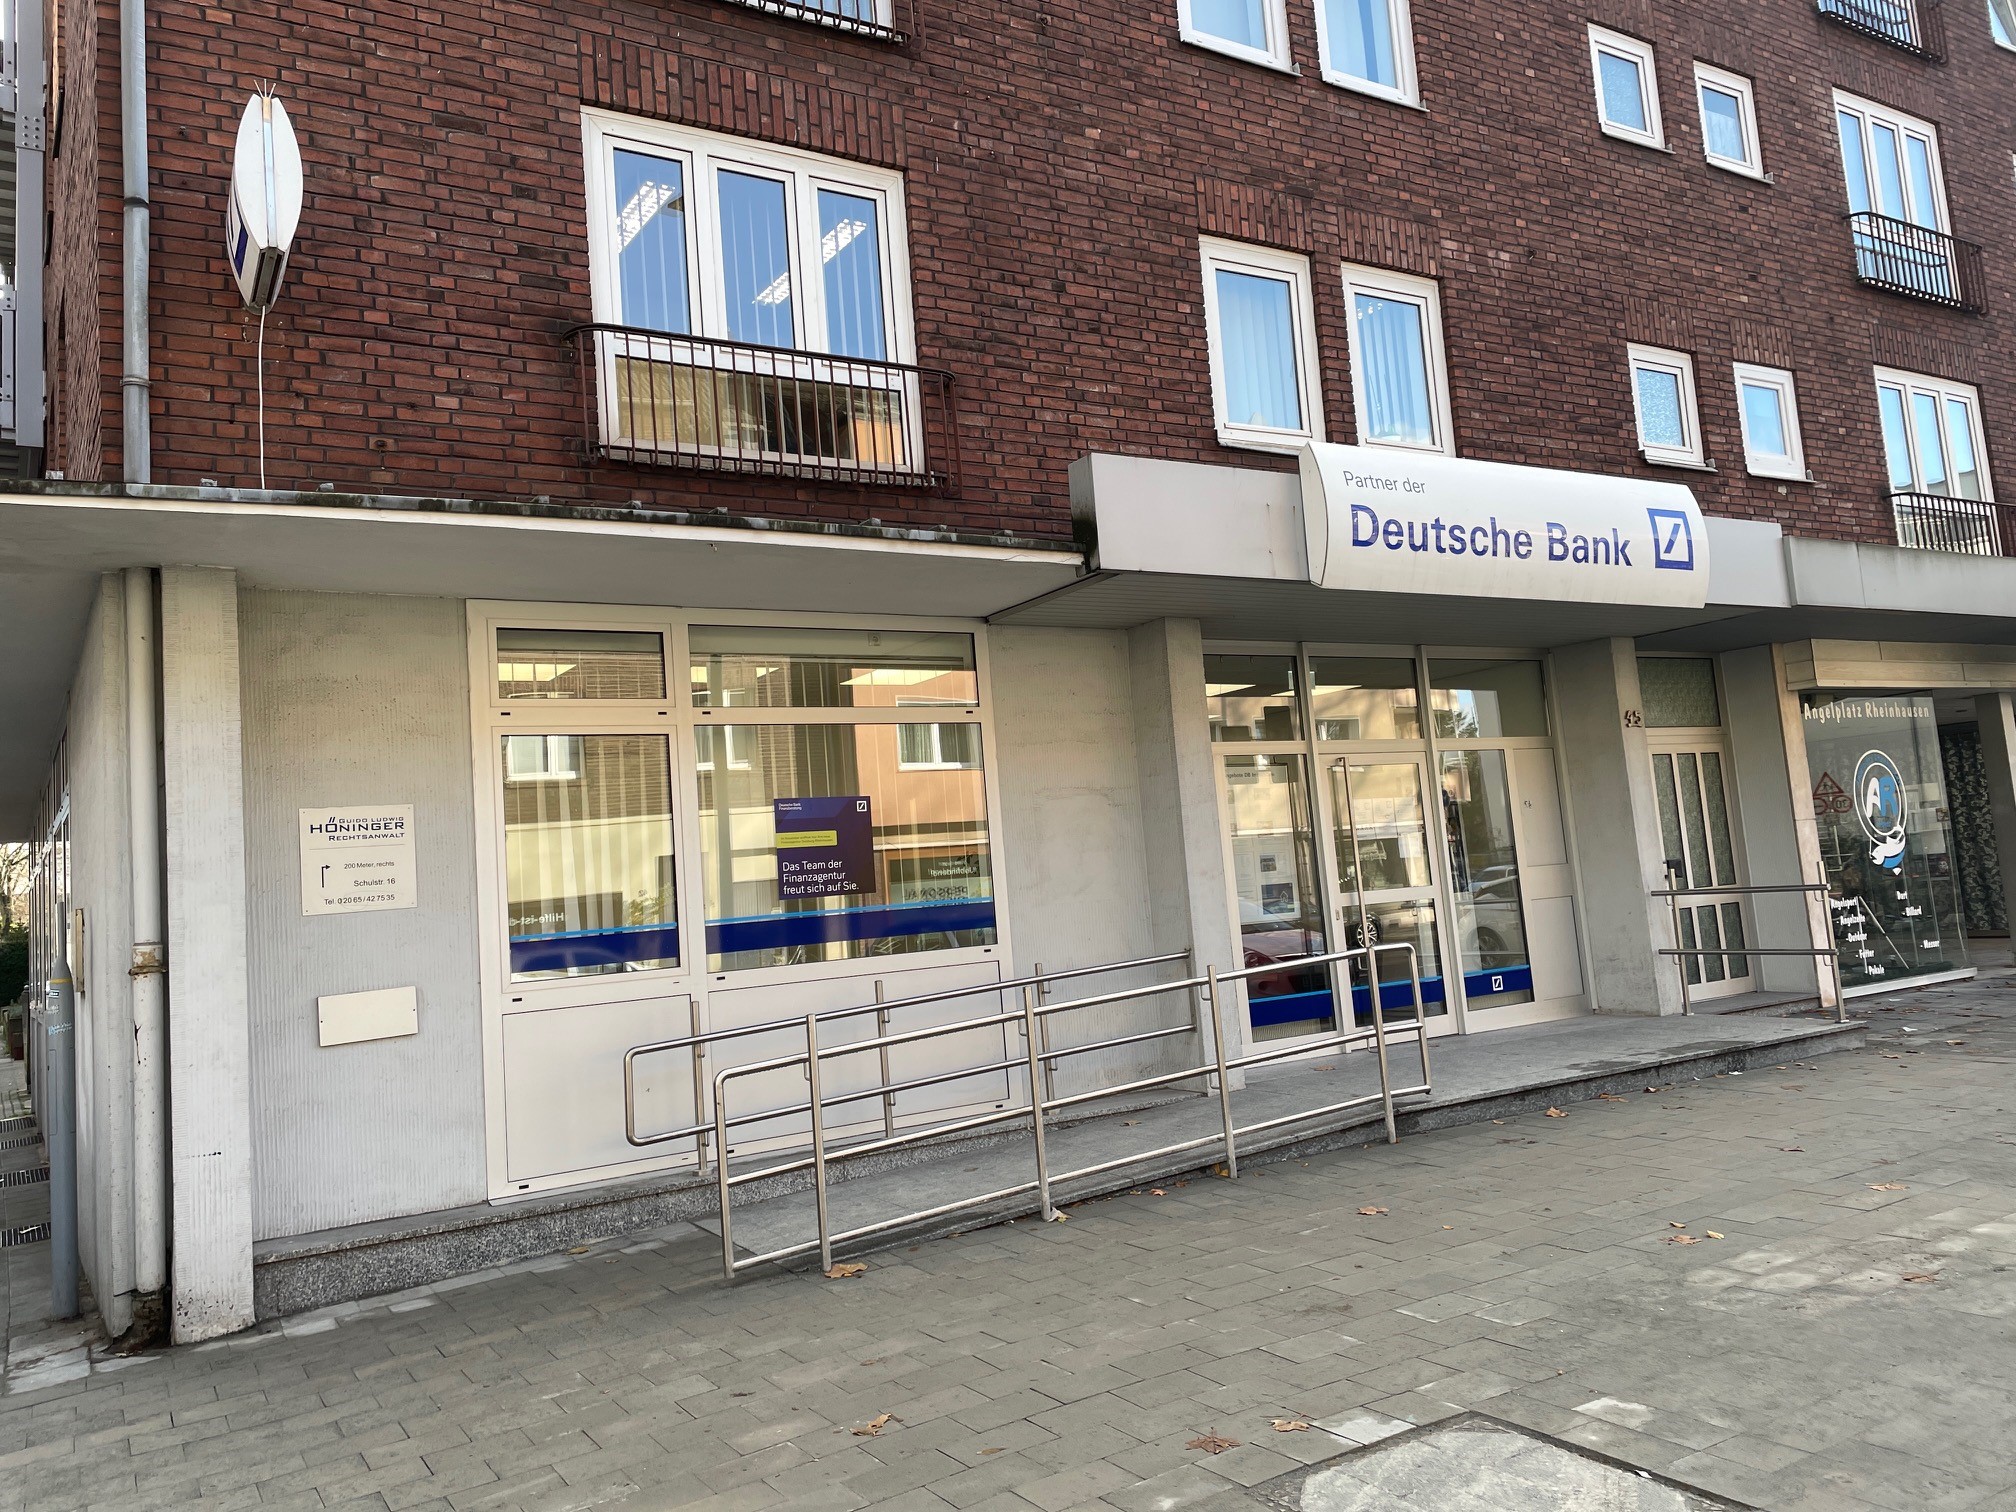 Finanzagentur - Partner der Deutschen Bank, Krefelder Straße 45 in Duisburg